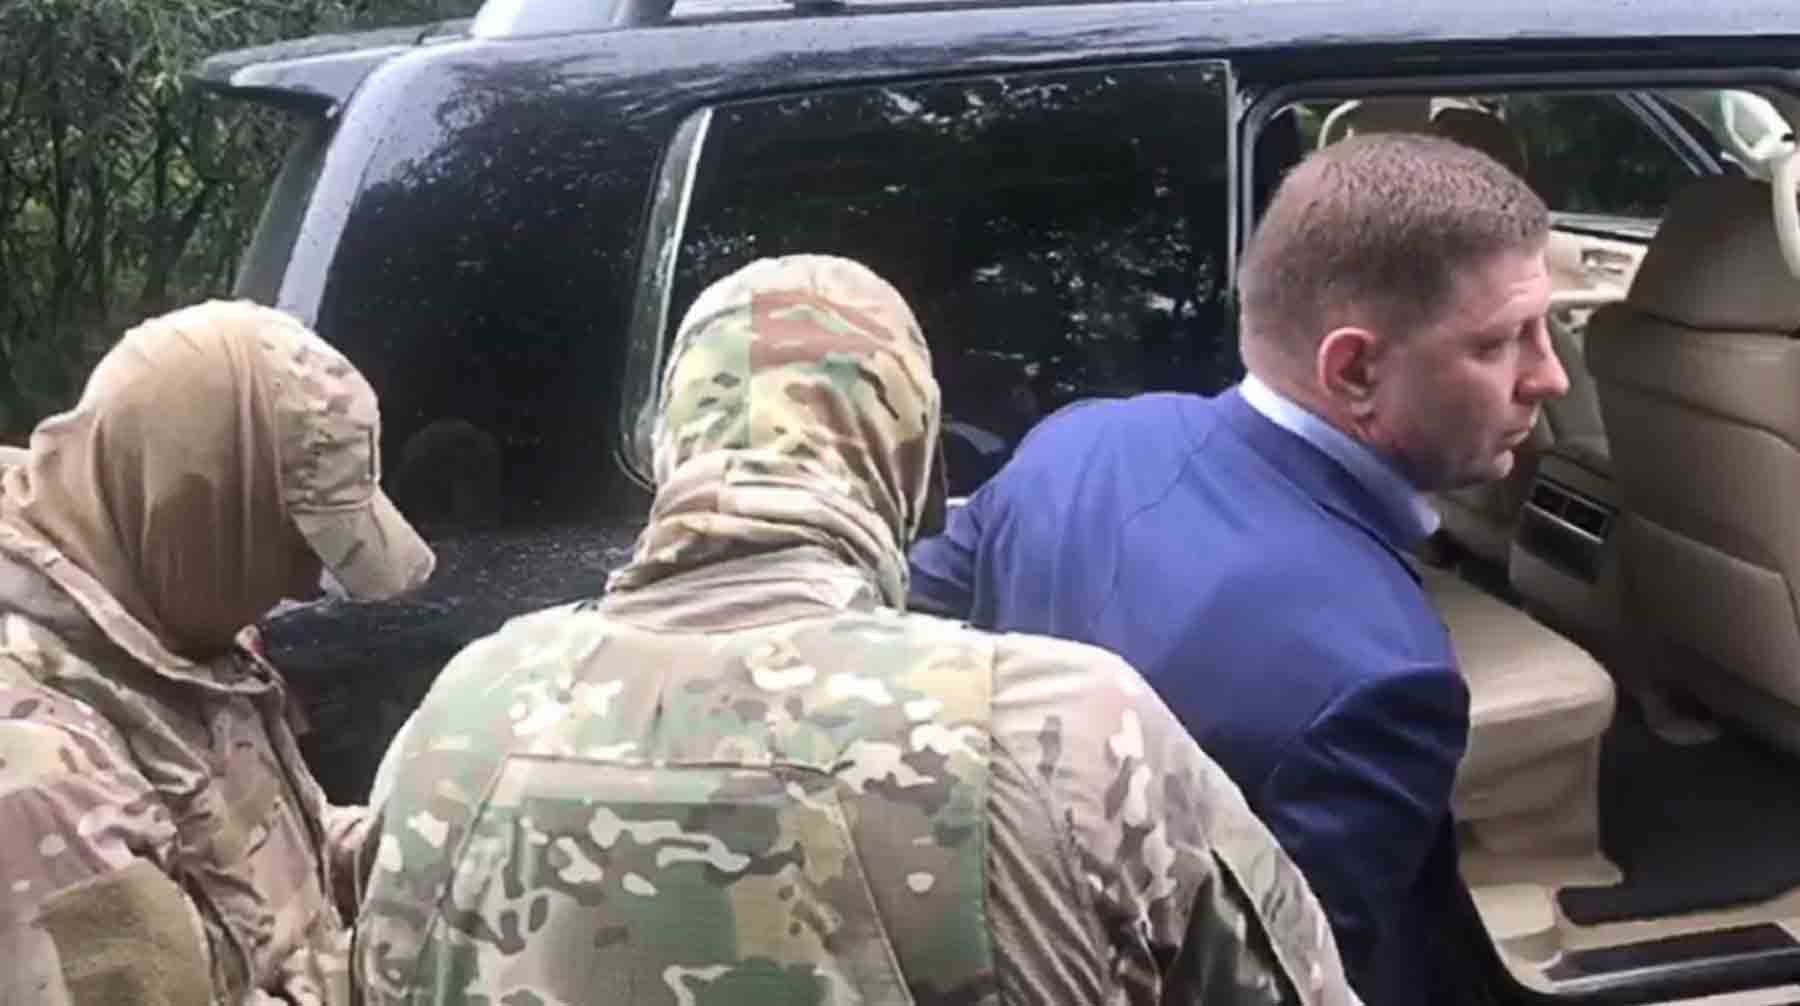 Сотрудники ФСБ России проводят задержание губернатора Хабаровского края Сергея Фургала